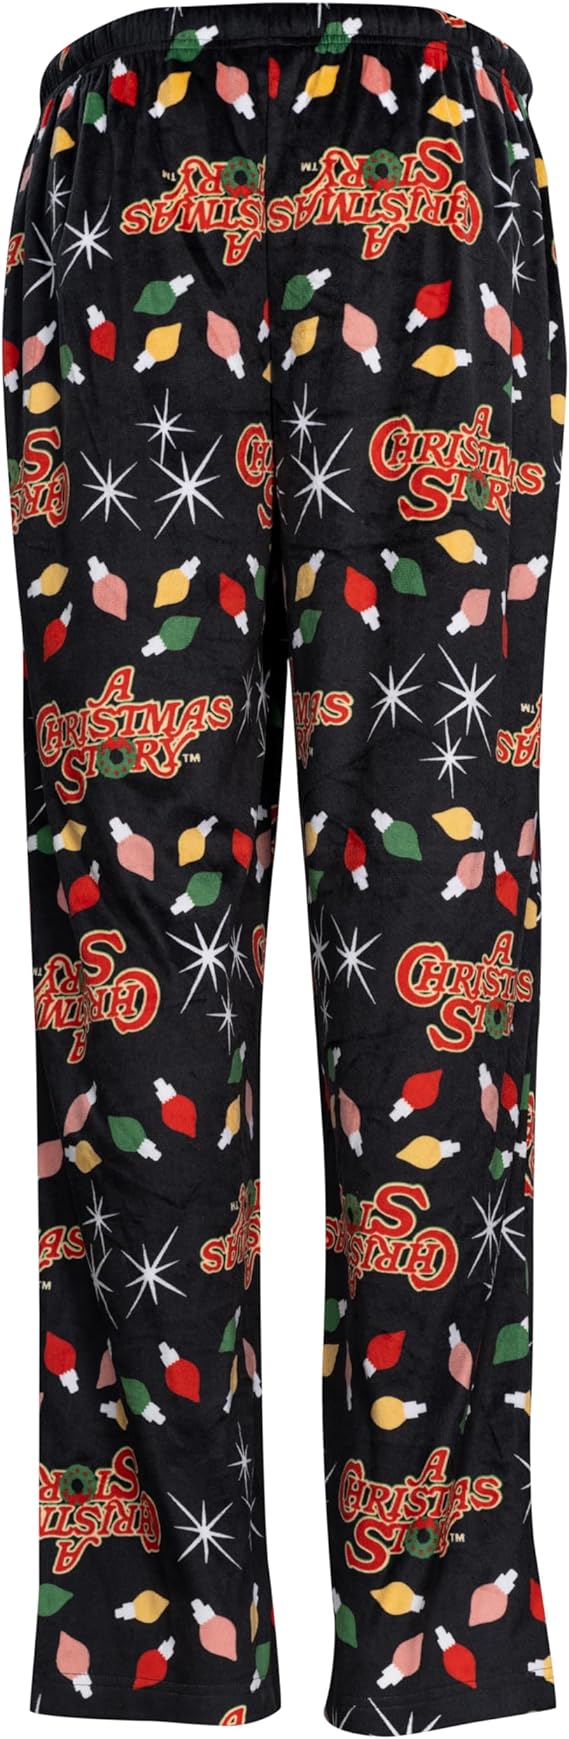 A CHRISTMAS STORY Brushed Fleece Holiday Lights Pj Lounge Pants Pajamas for Men